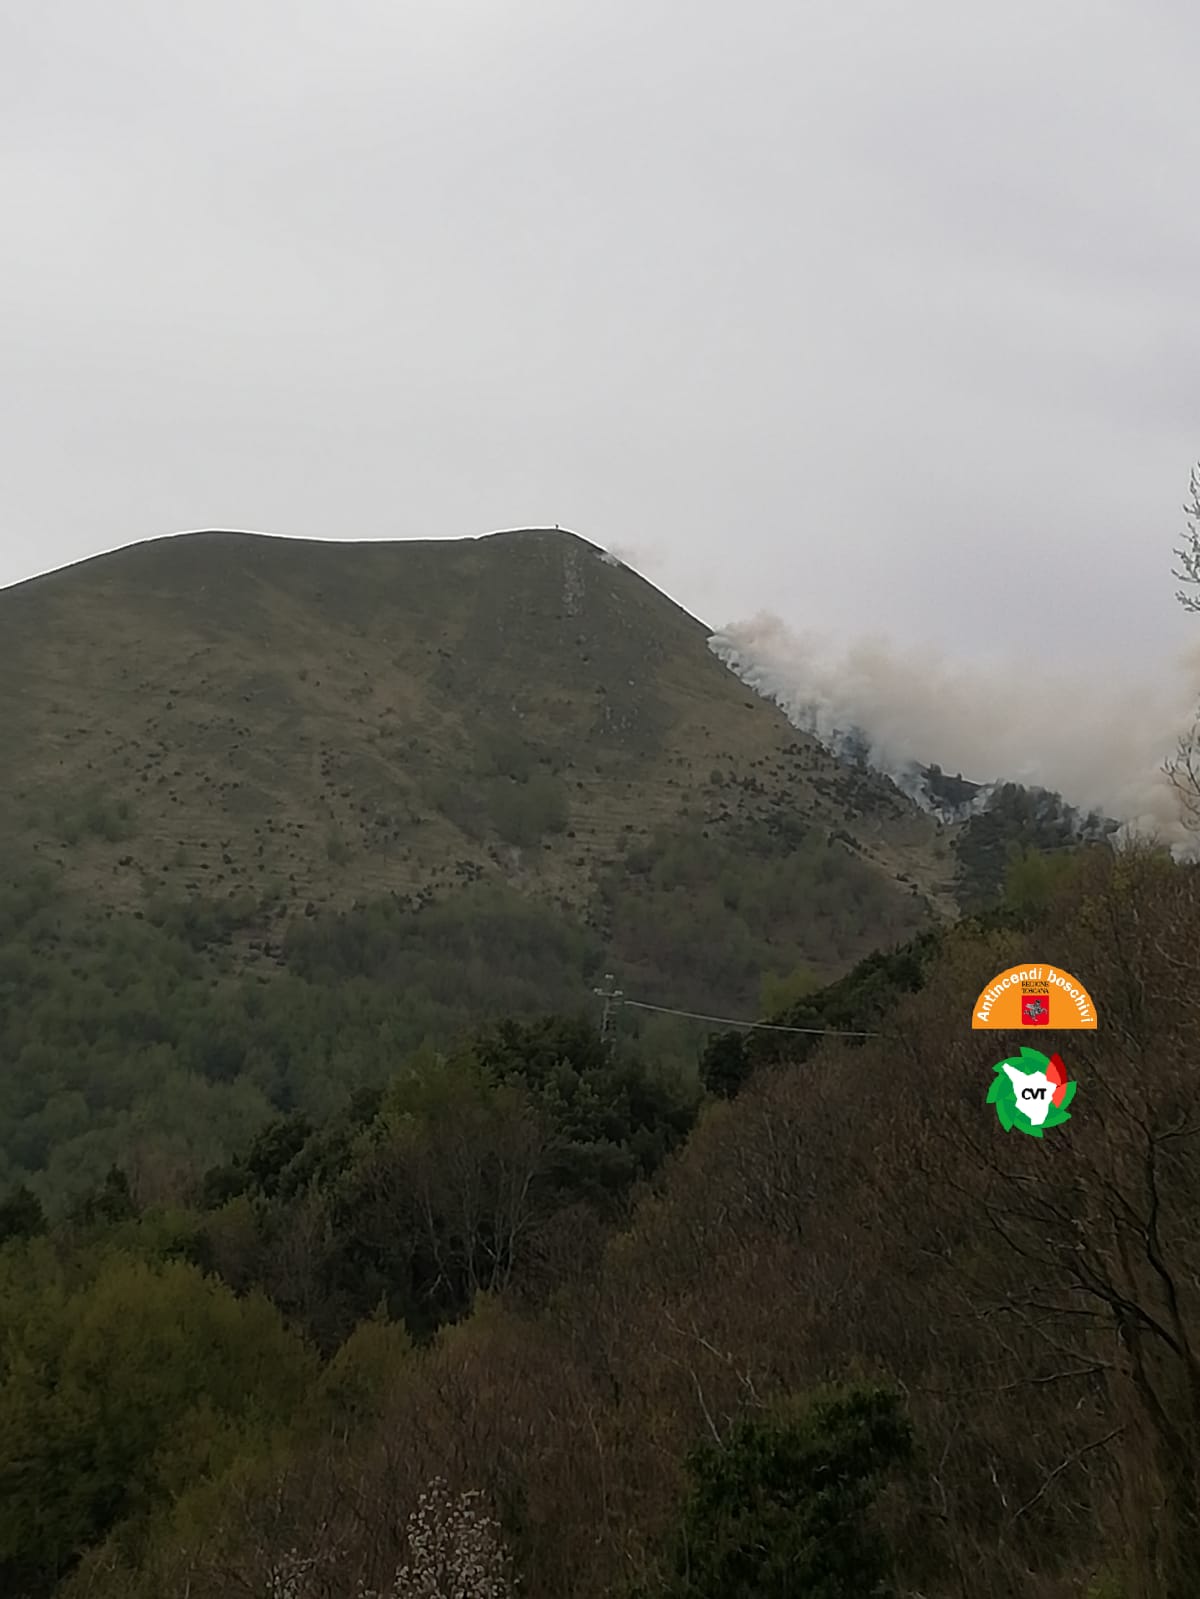 Spenti i due incendi in lucchesia. Resta divieto abbruciamenti con vento. In Toscana 43 incendi nel mese di aprile.